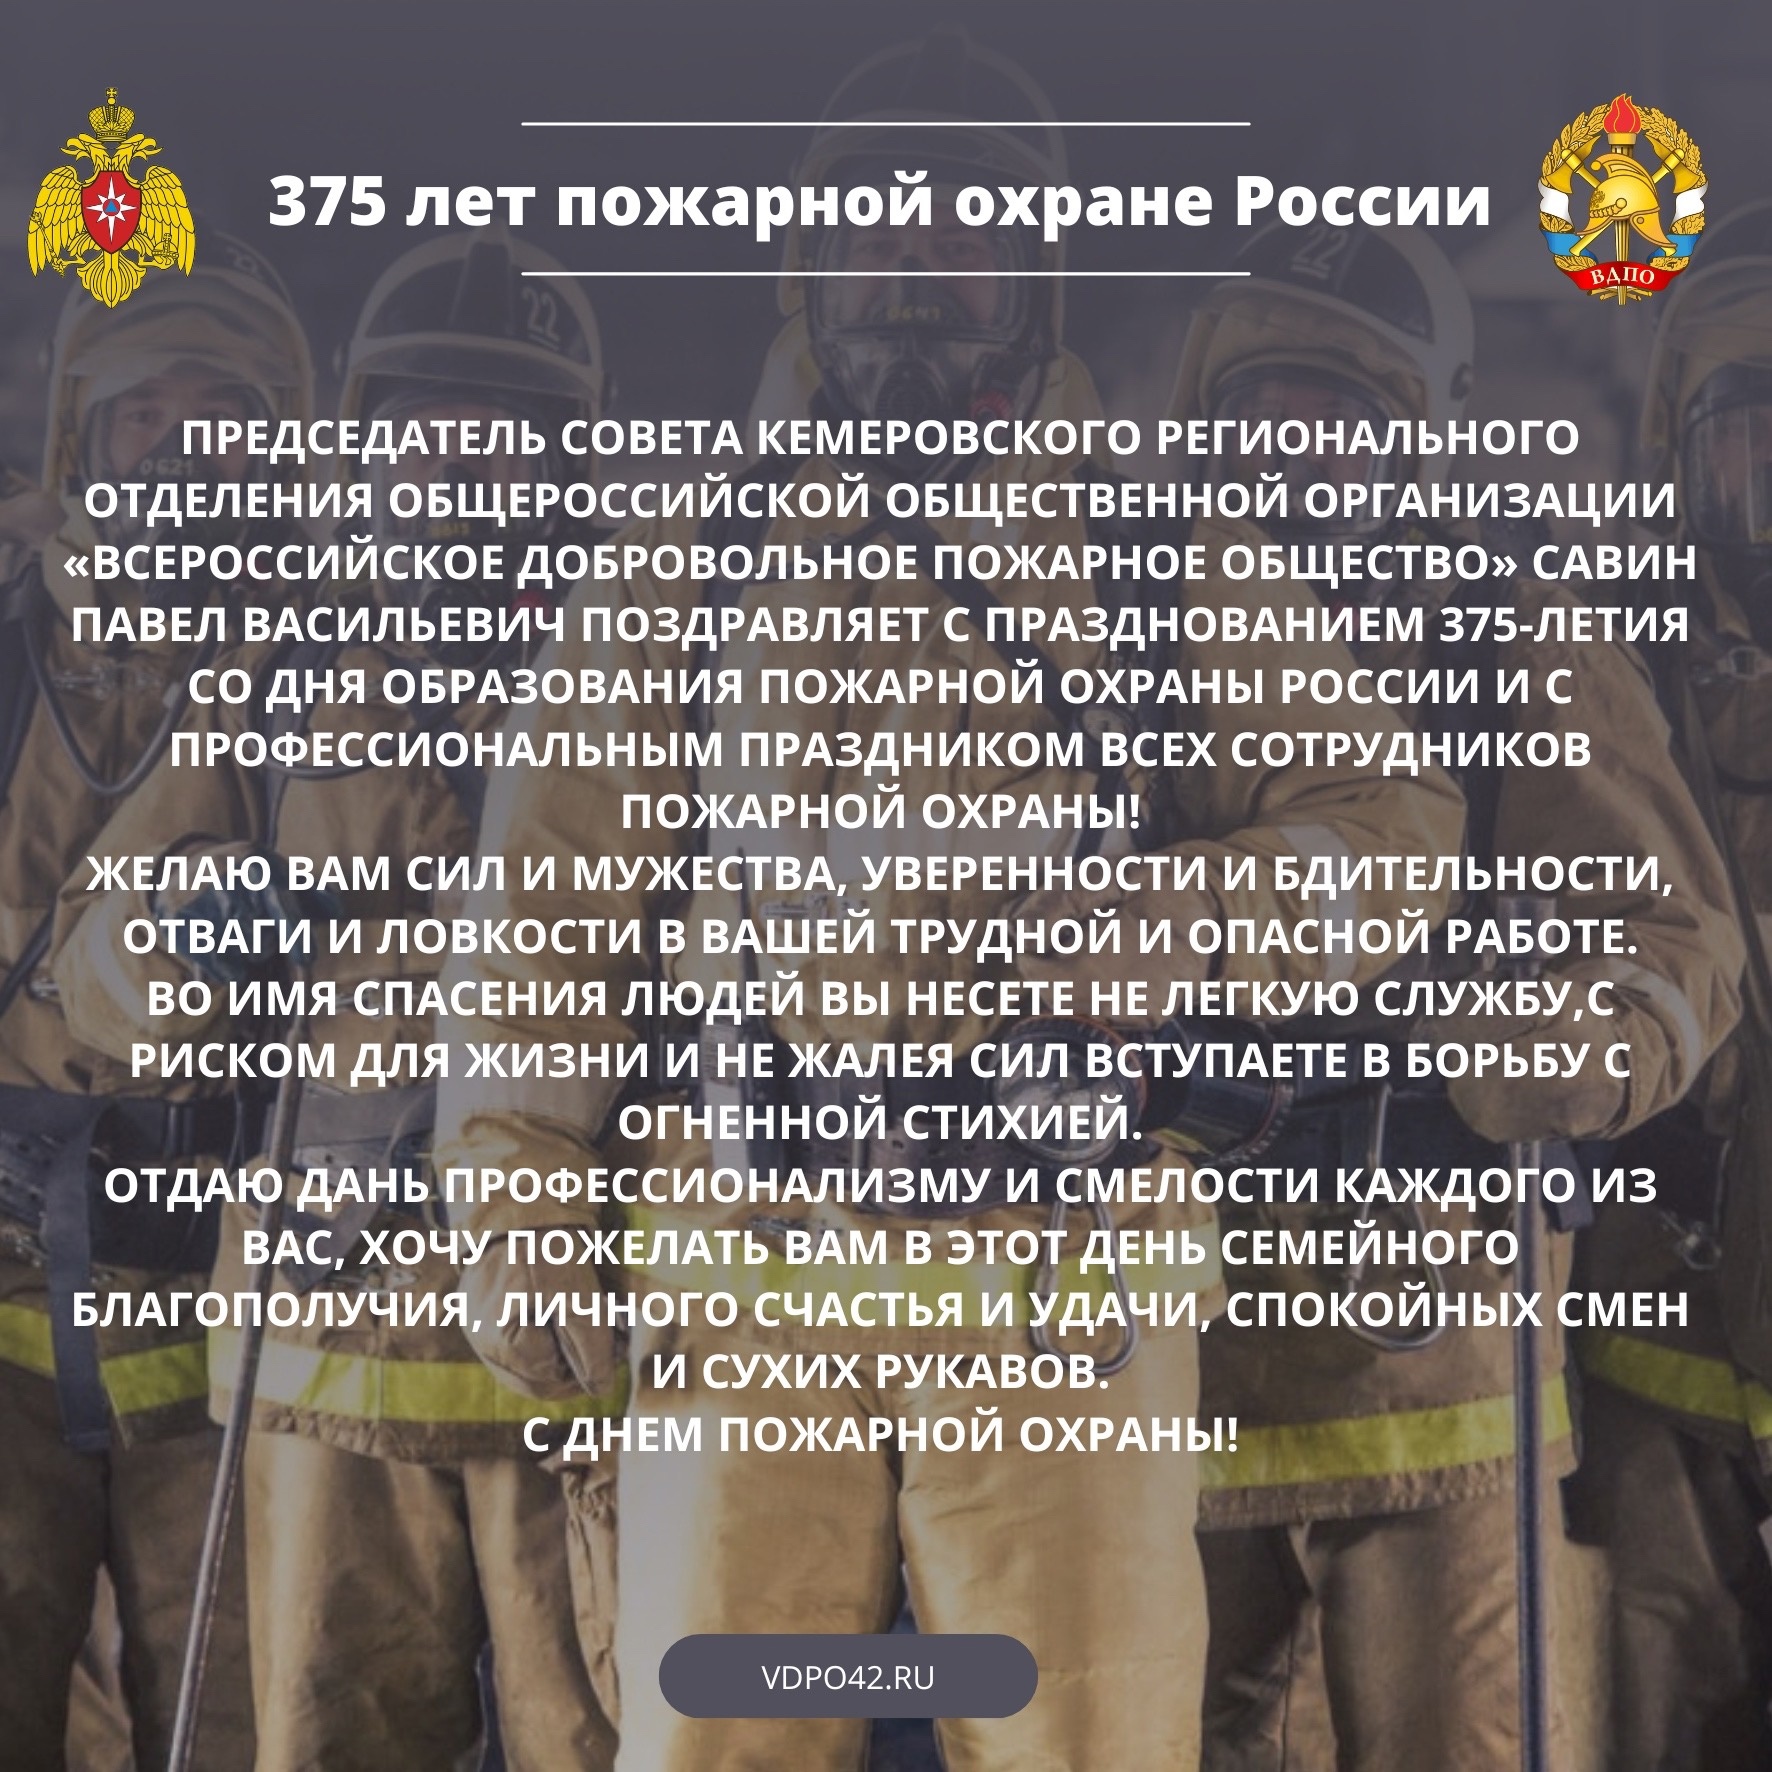 С 375-летием Пожарной охраны России!